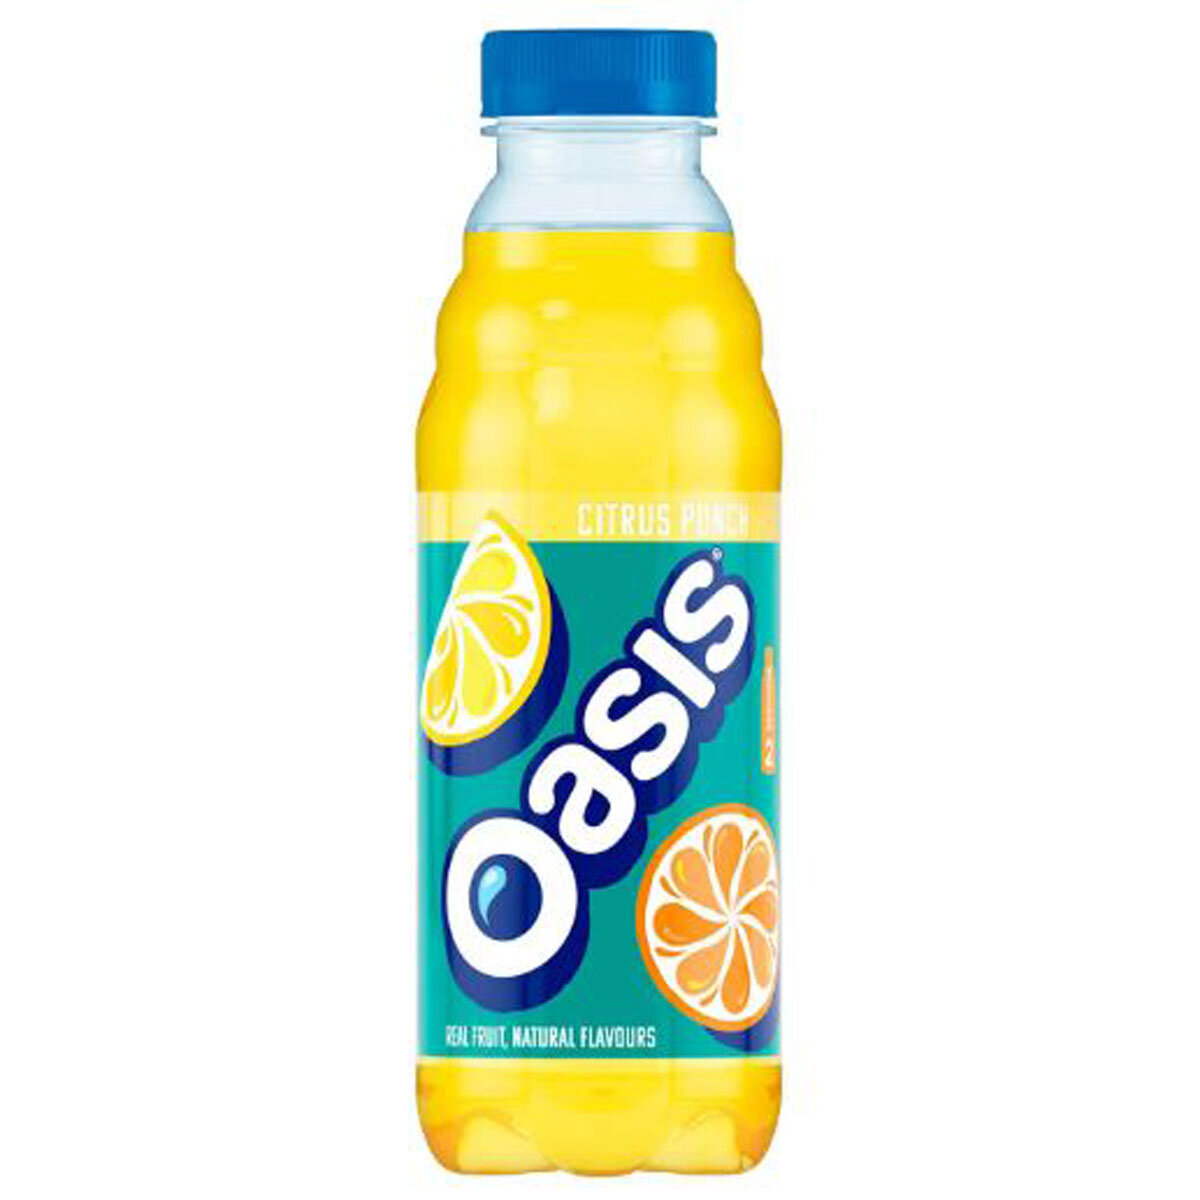 Oasis Citrus Punch PMP £1.20, 500ml